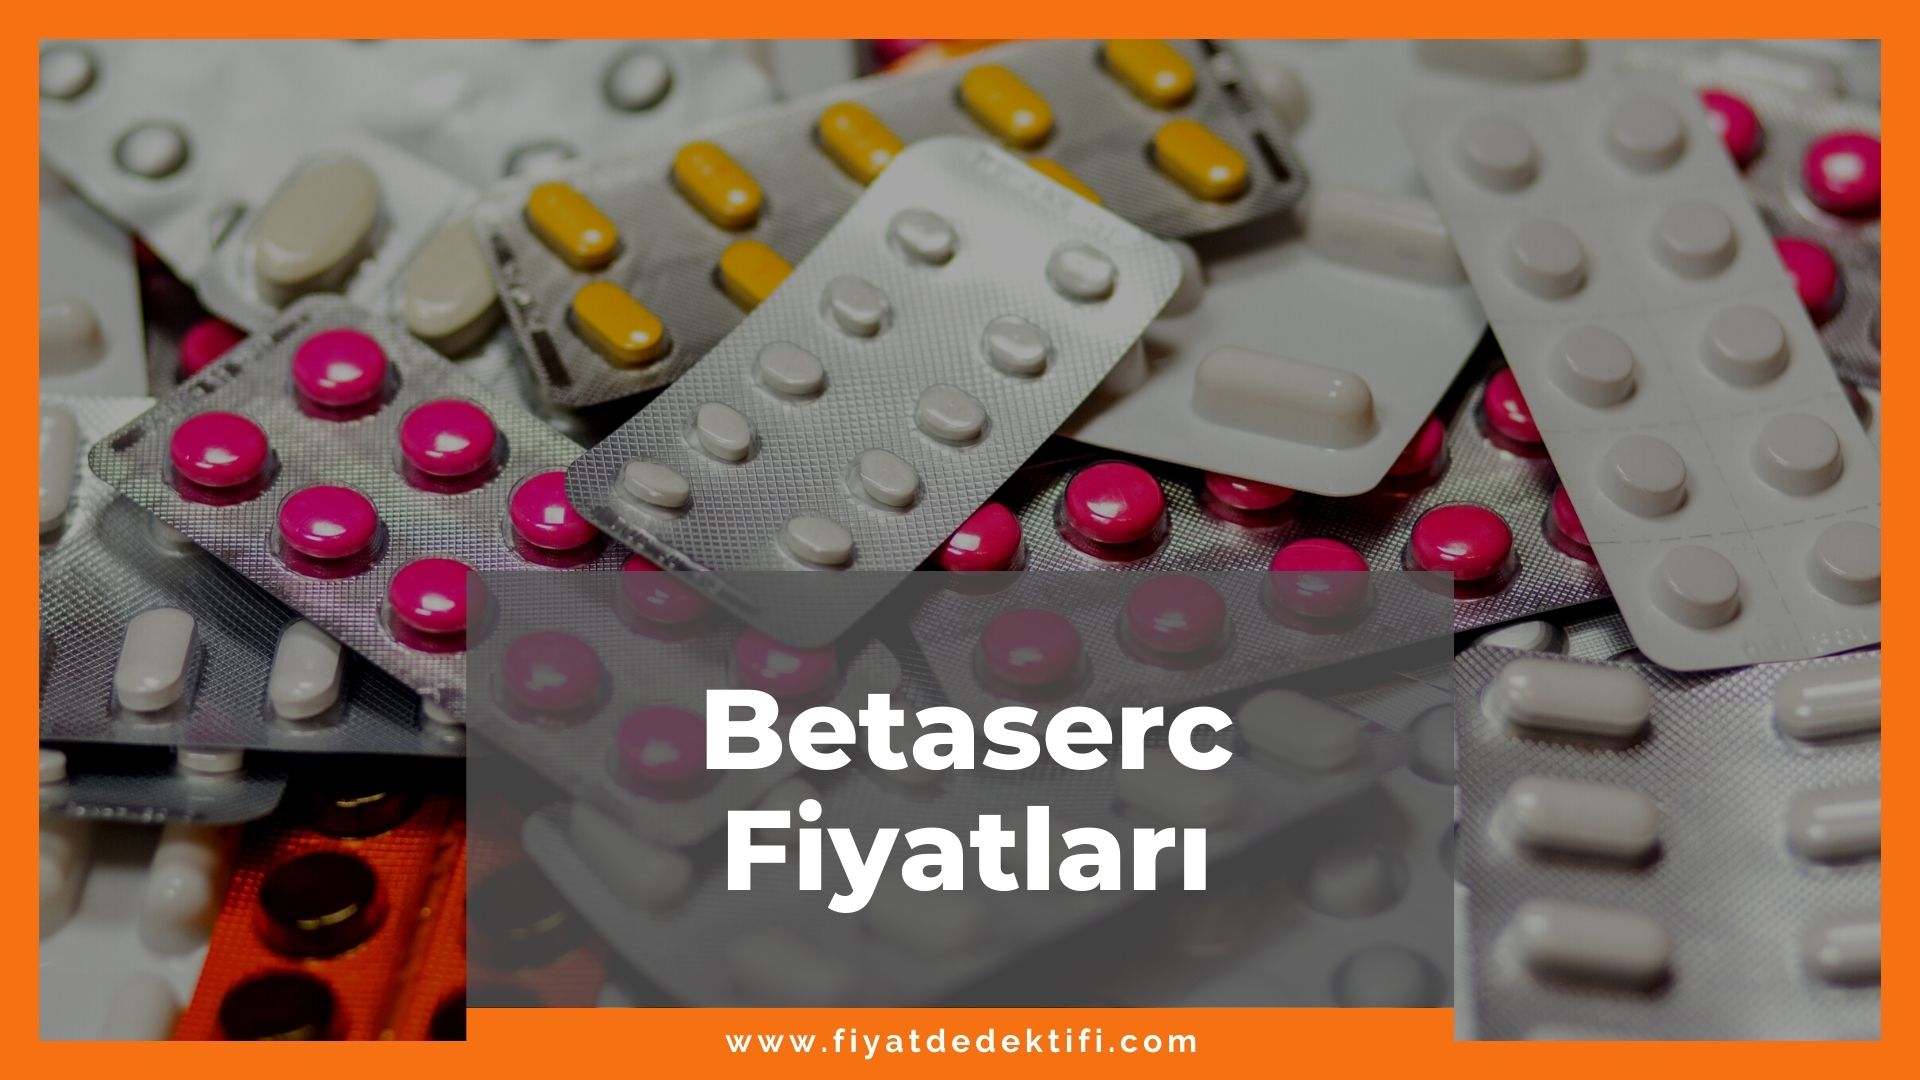 Betaserc Fiyat 2021, Betaserc Fiyatı, Betaserc 24 mg Fiyatı, betaserc zamlandı mı, betaserc zamlı fiyat ne kadar oldu